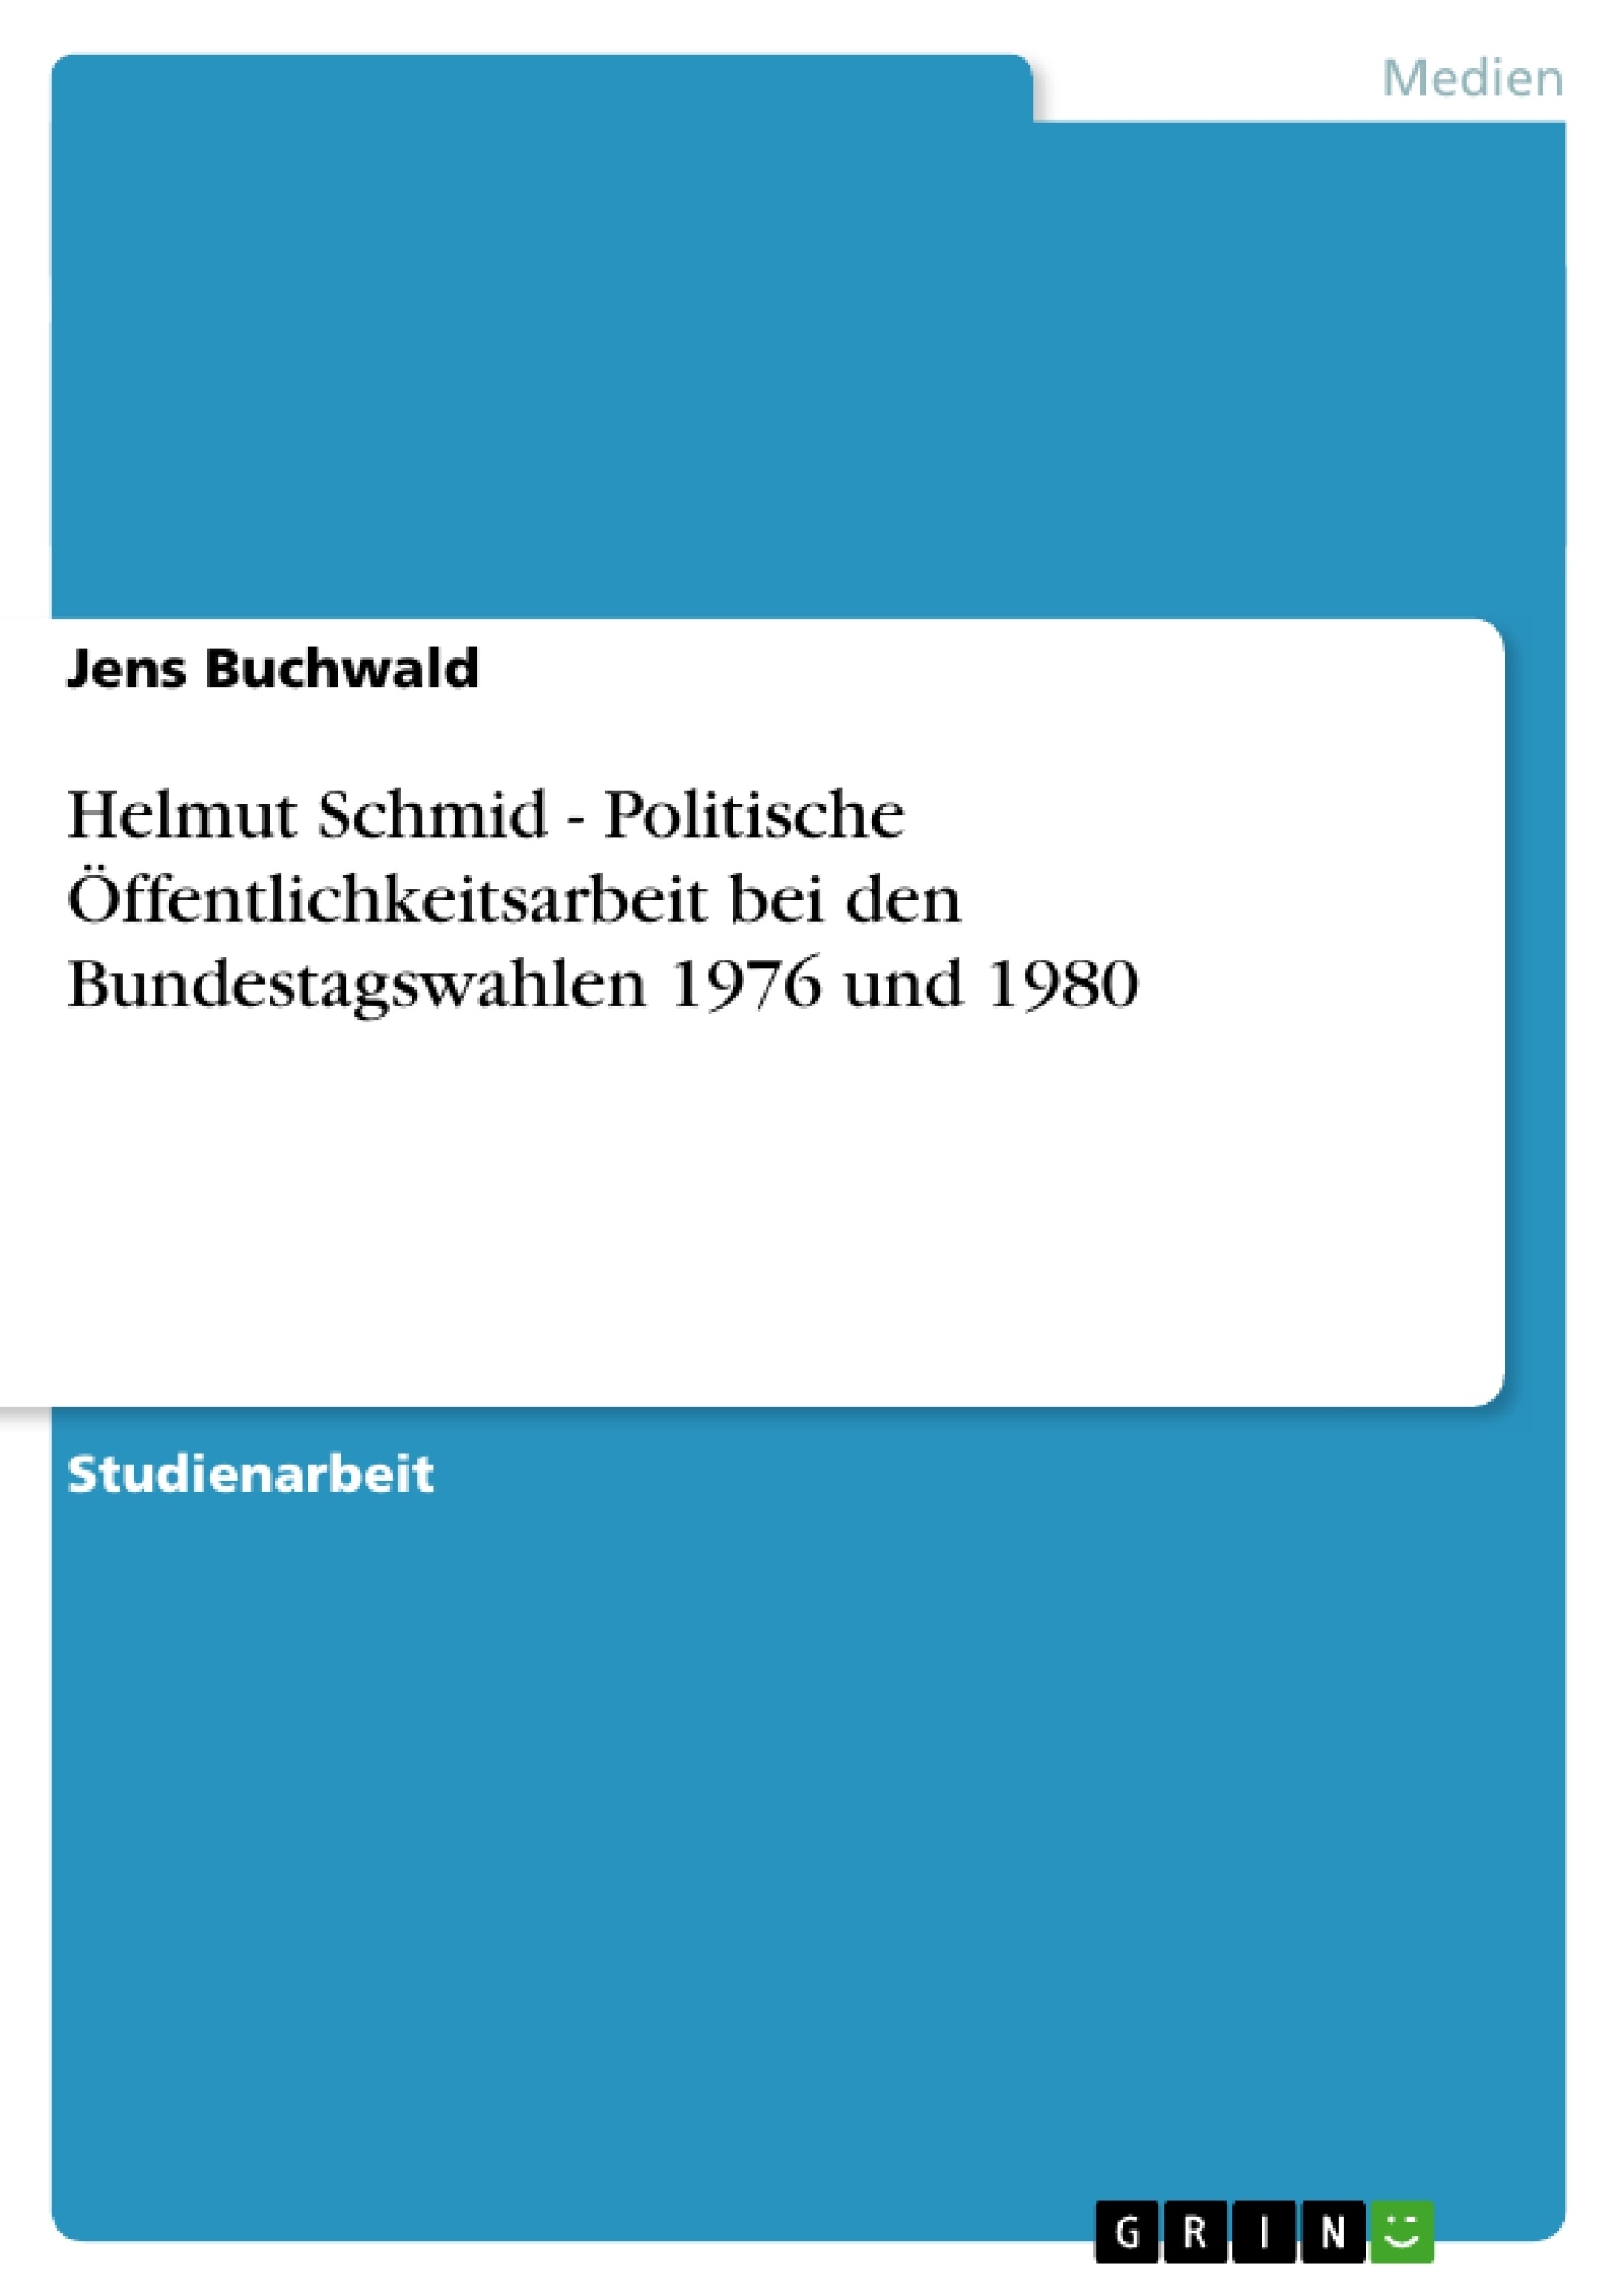 Titre: Helmut Schmid - Politische Öffentlichkeitsarbeit bei den Bundestagswahlen 1976 und 1980